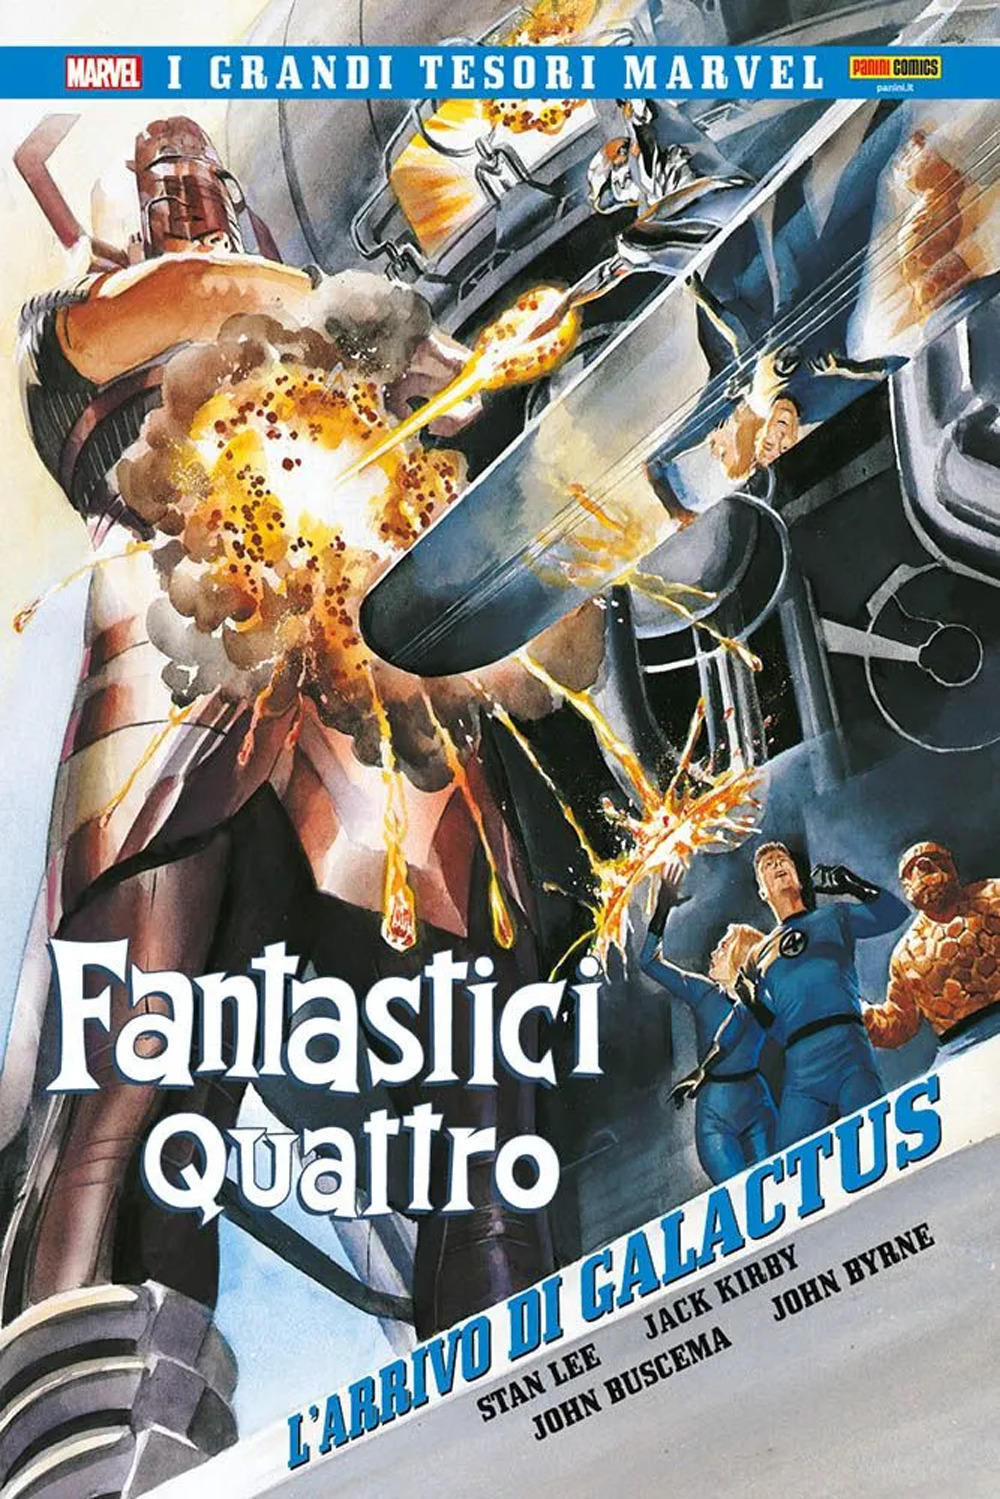 L'arrivo di Galactus. Fantastici Quattro